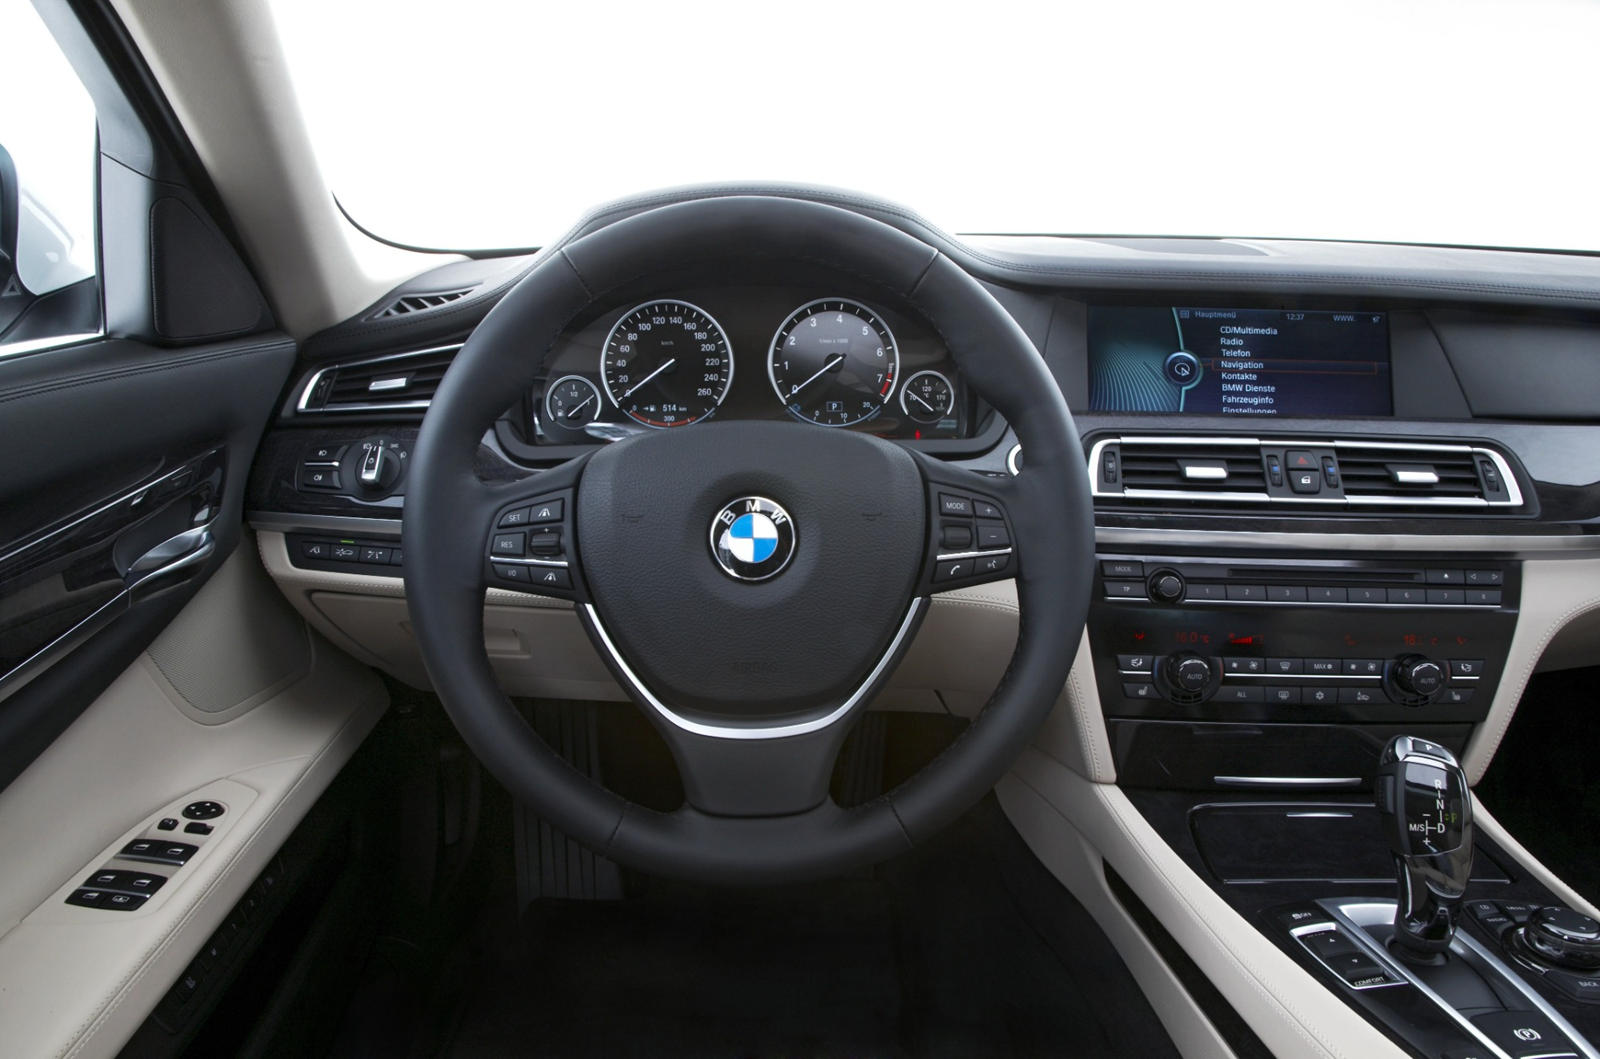 2012 BMW 7 Series Interior Photos | CarBuzz